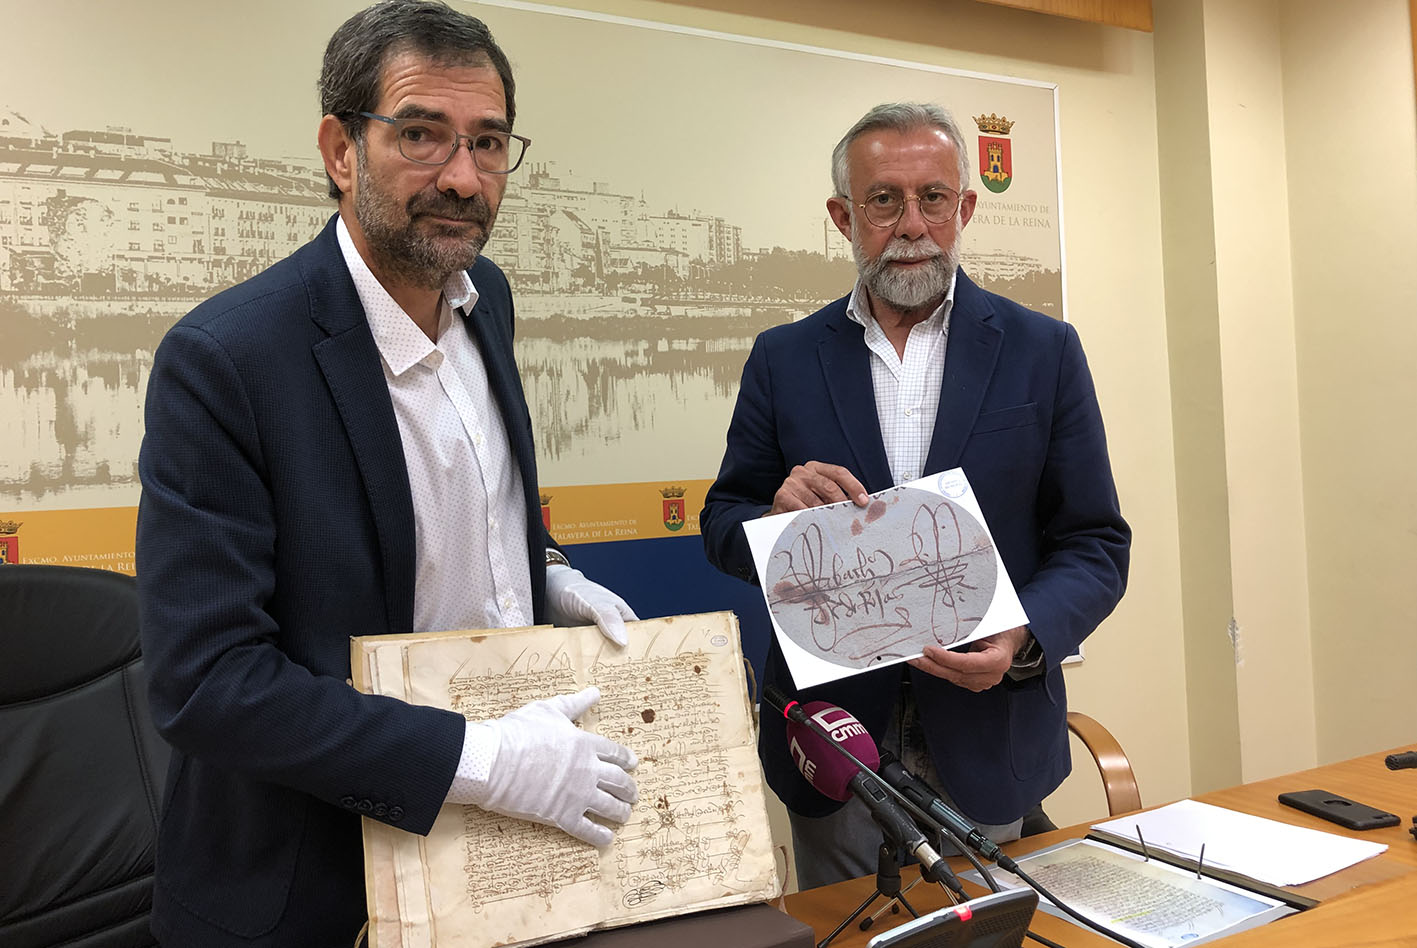 Rafael Gómez, archivero municipal, con el documento histórico; y Jaime Ramos, alcalde de Talavera, con la firma de Fernando de Rojas.